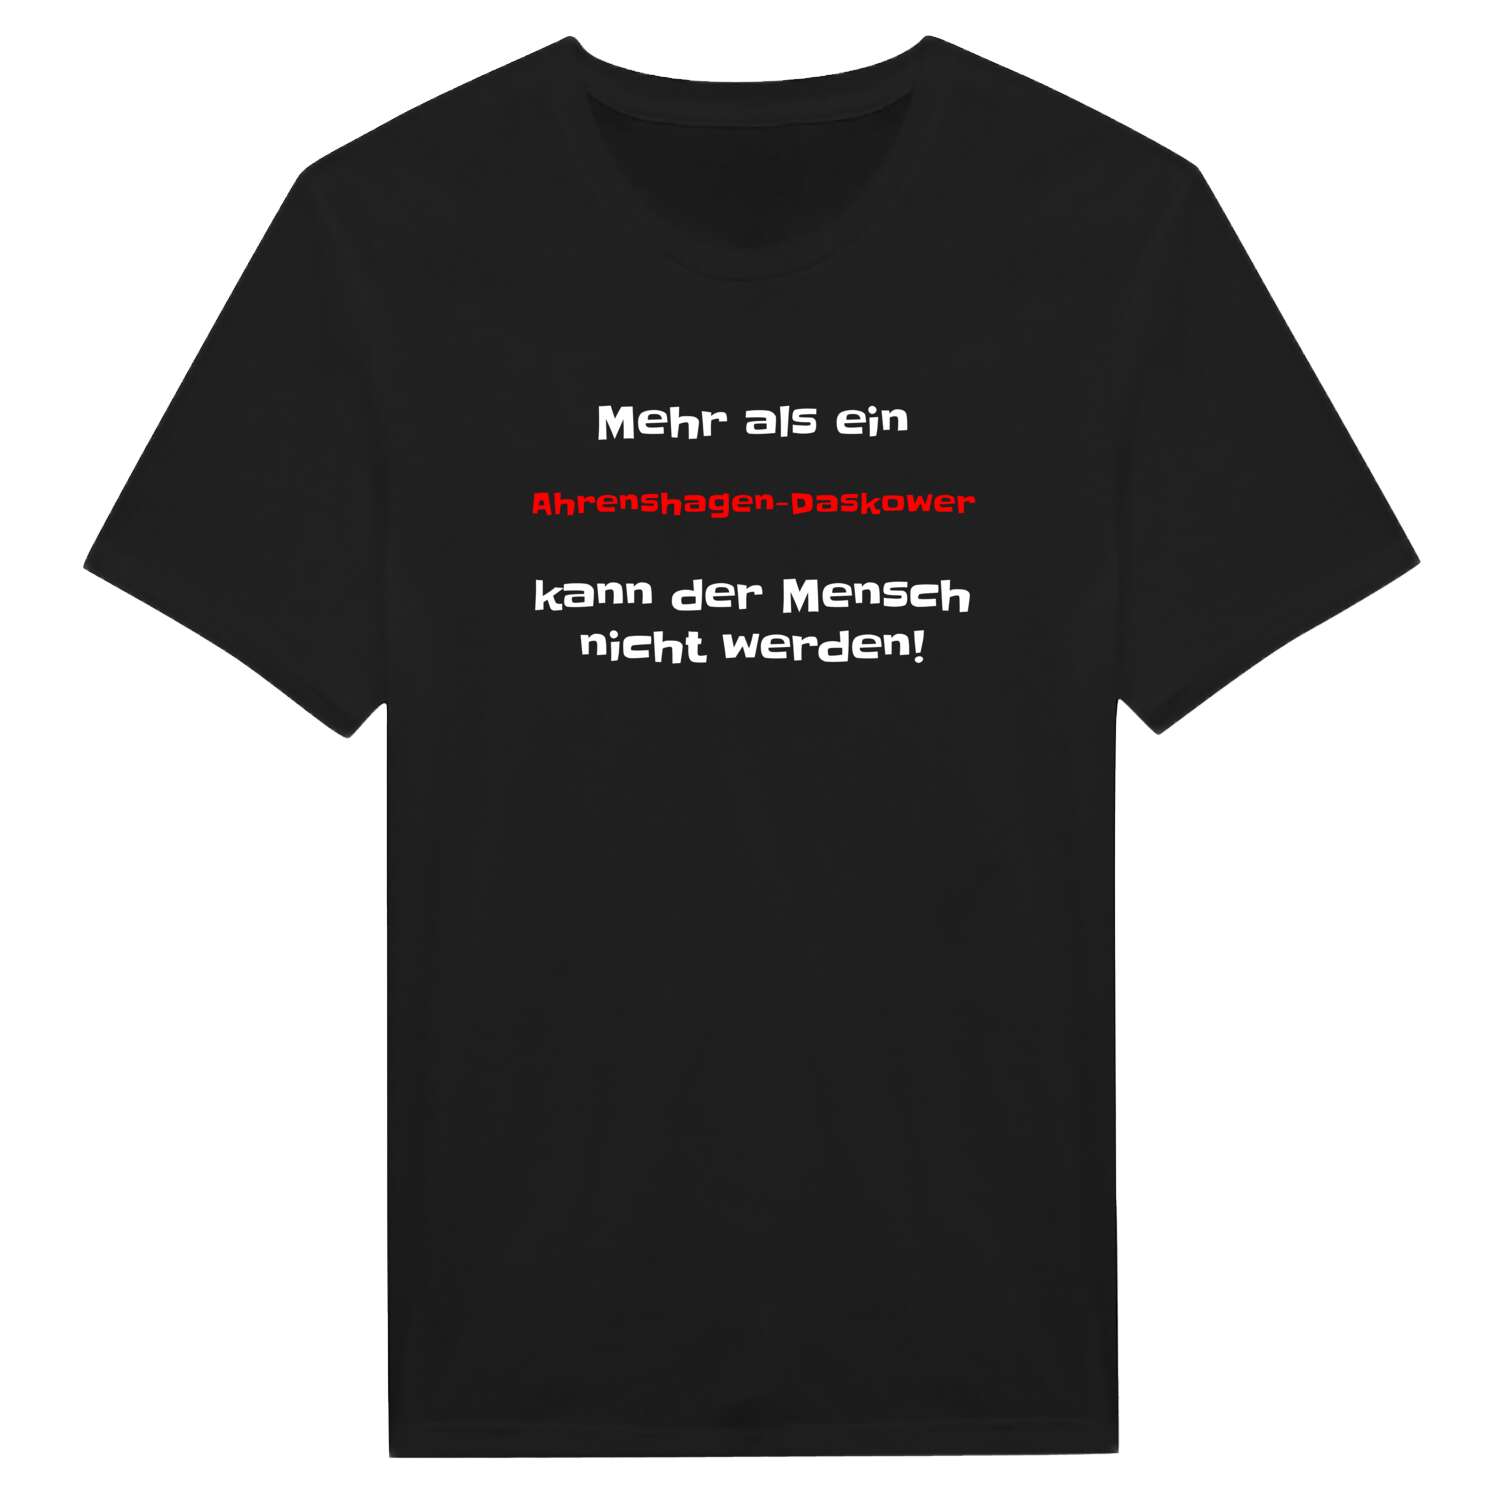 Ahrenshagen-Daskow T-Shirt »Mehr als ein«